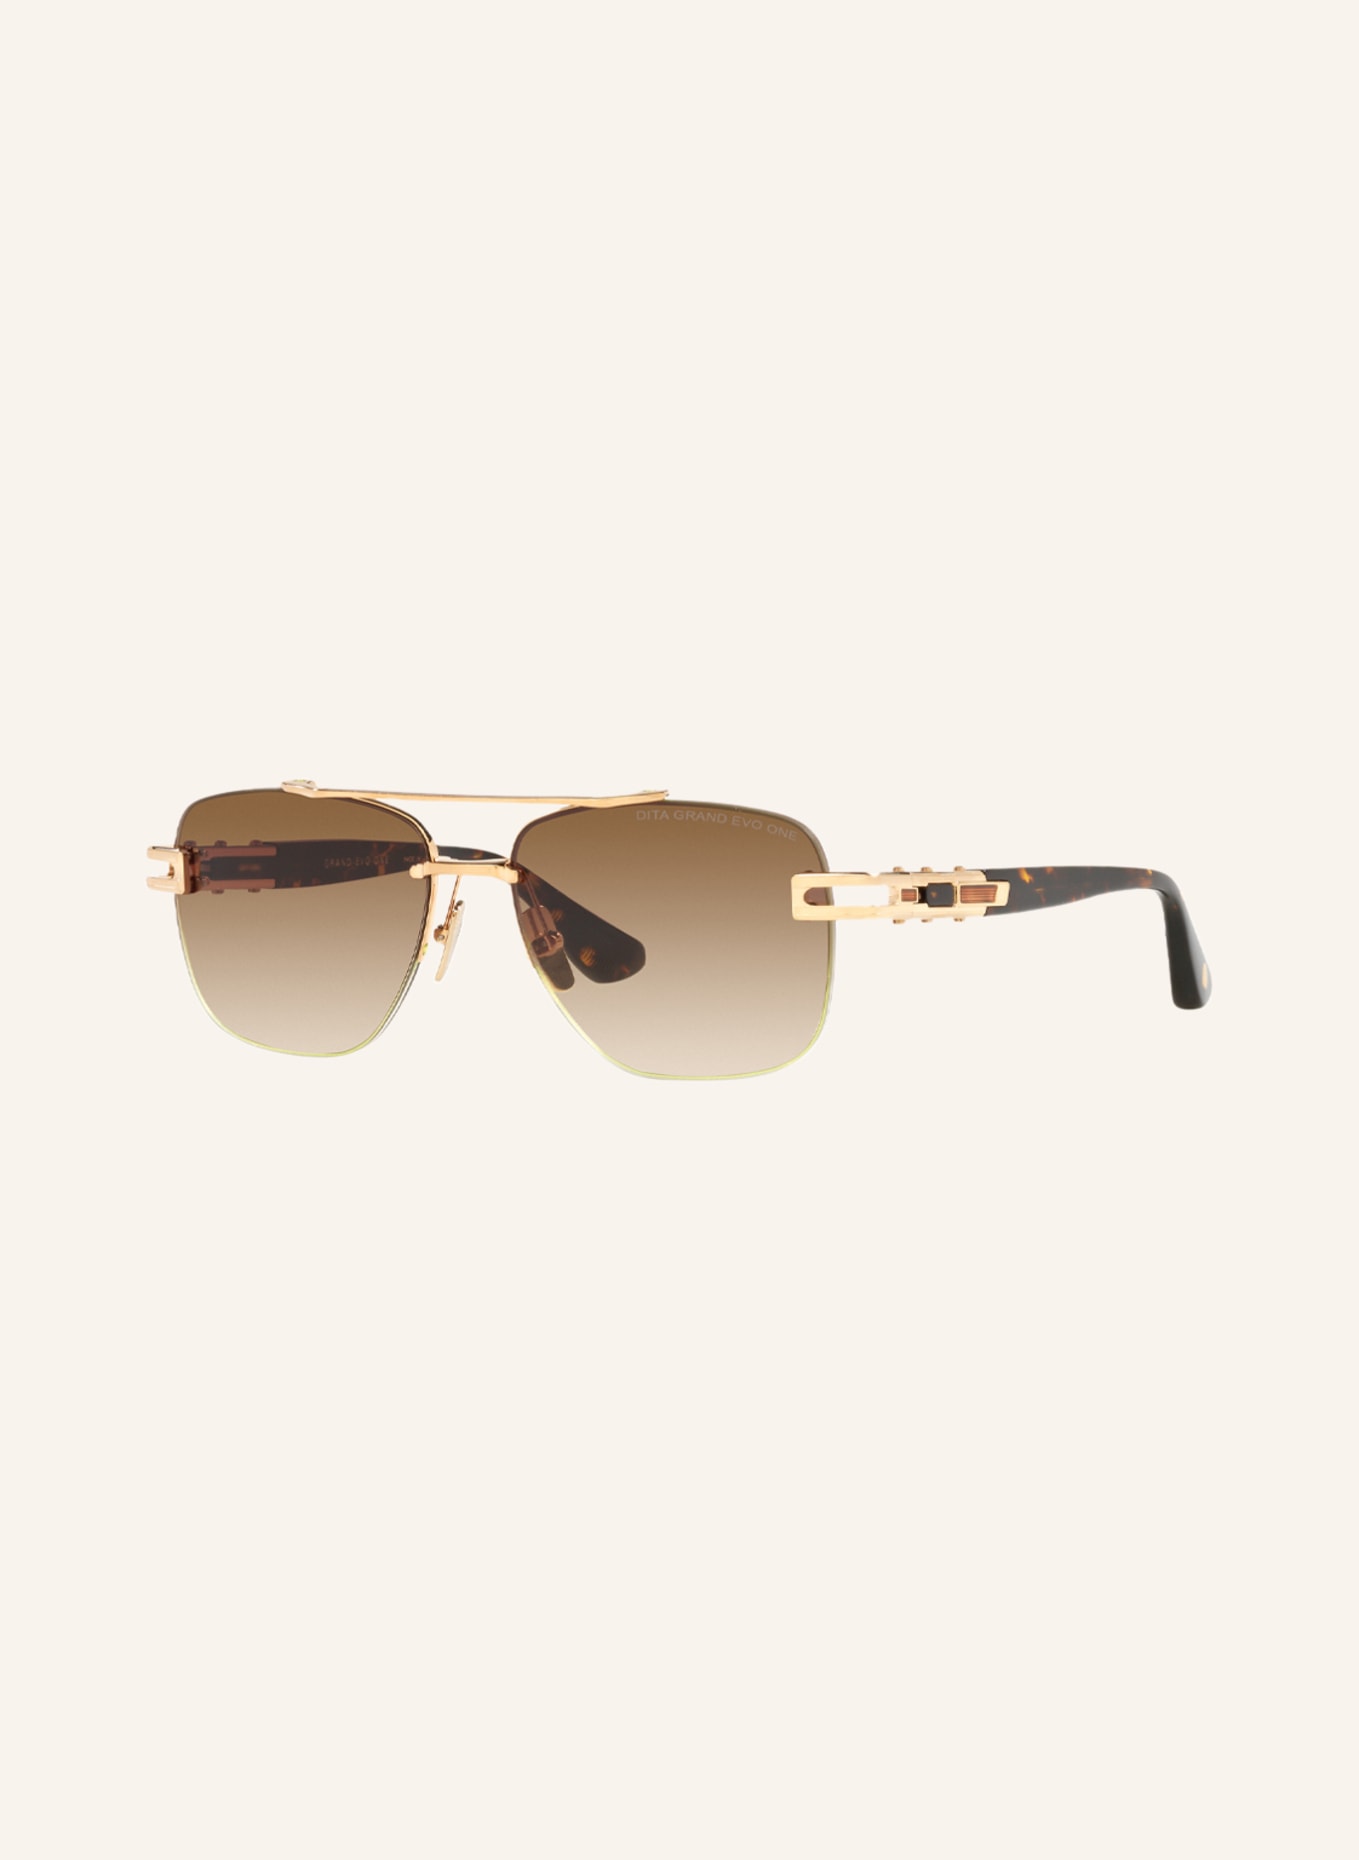 DITA Sunglasses DT8138, Color: 4850D4 - GOLD/ BROWN GRADIENT (Image 1)